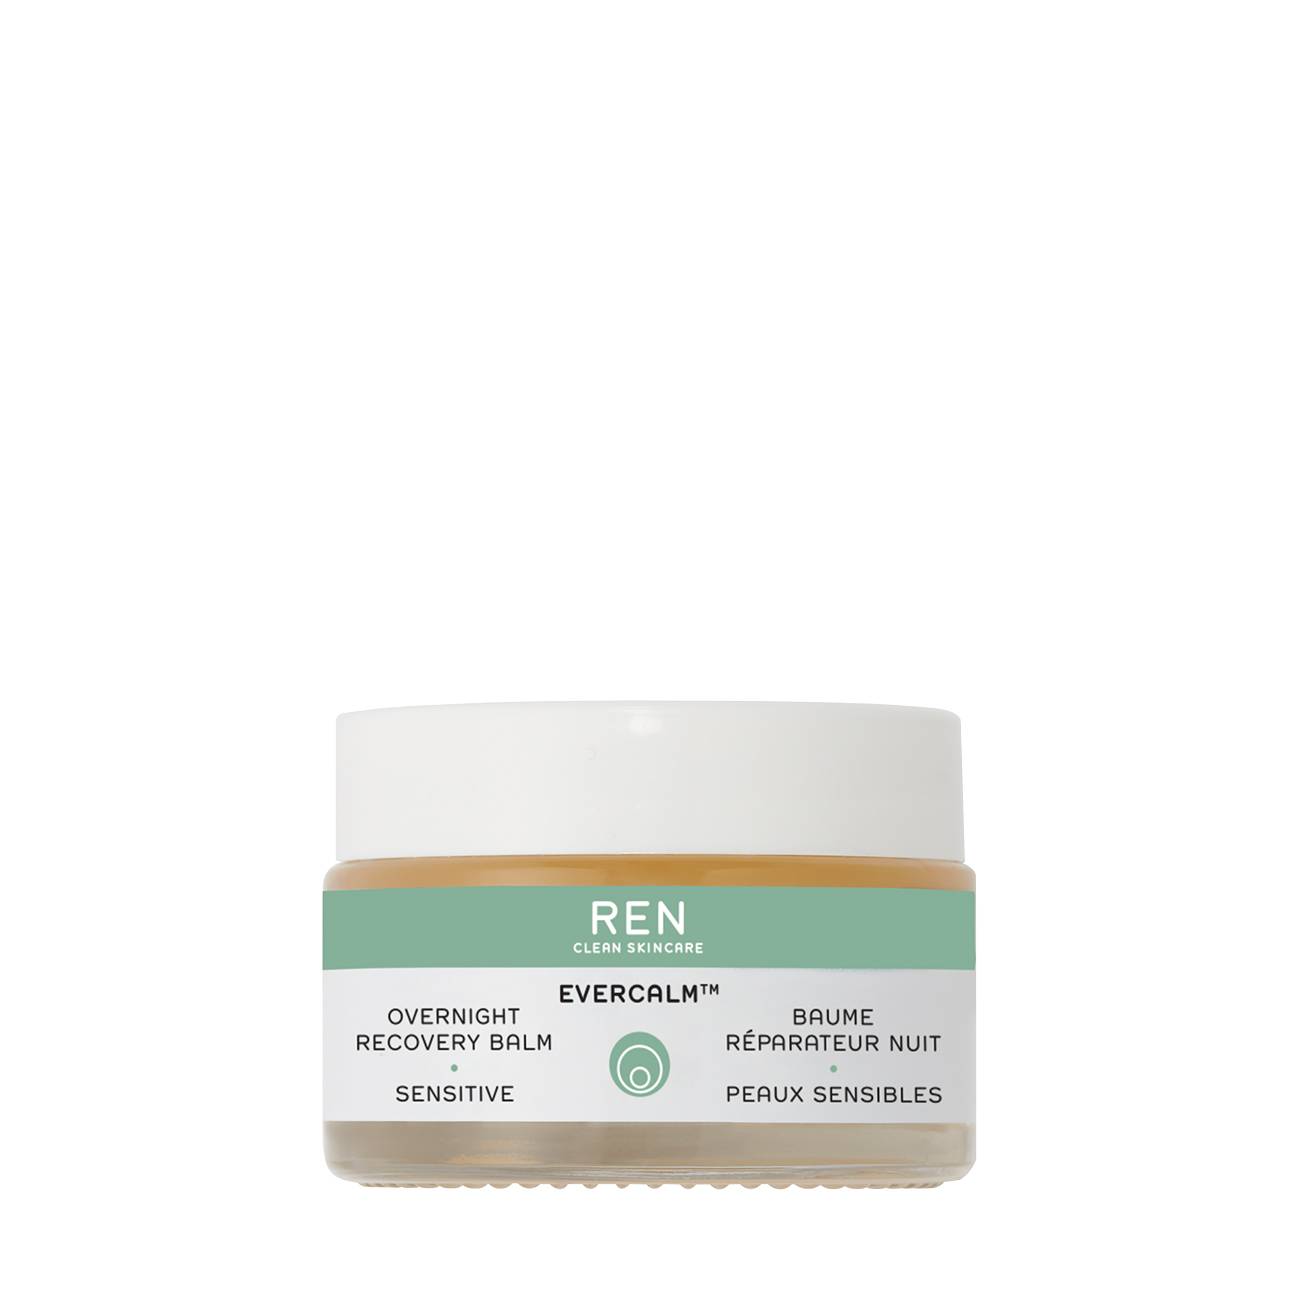 Evercalm™ Overnight Recovery Balm 30 ml REN Clean Skincare bestvalue.eu